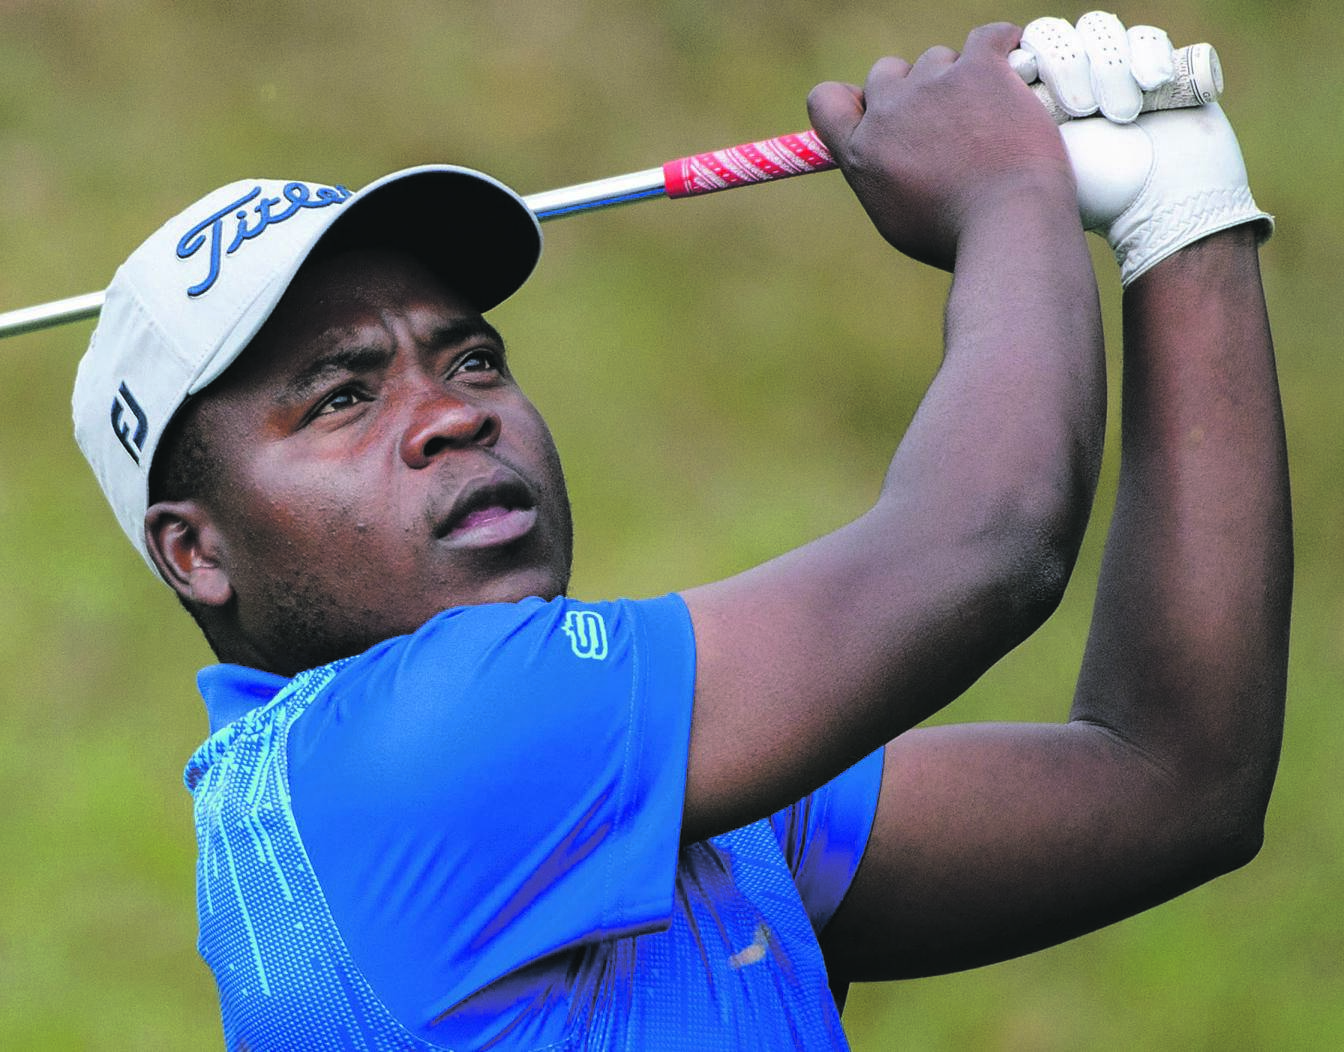 Musiwalo Nethunzwi is enjoying golf again. PHOTO: Thinus Maritz / Sunshine Tour / Gallo Images